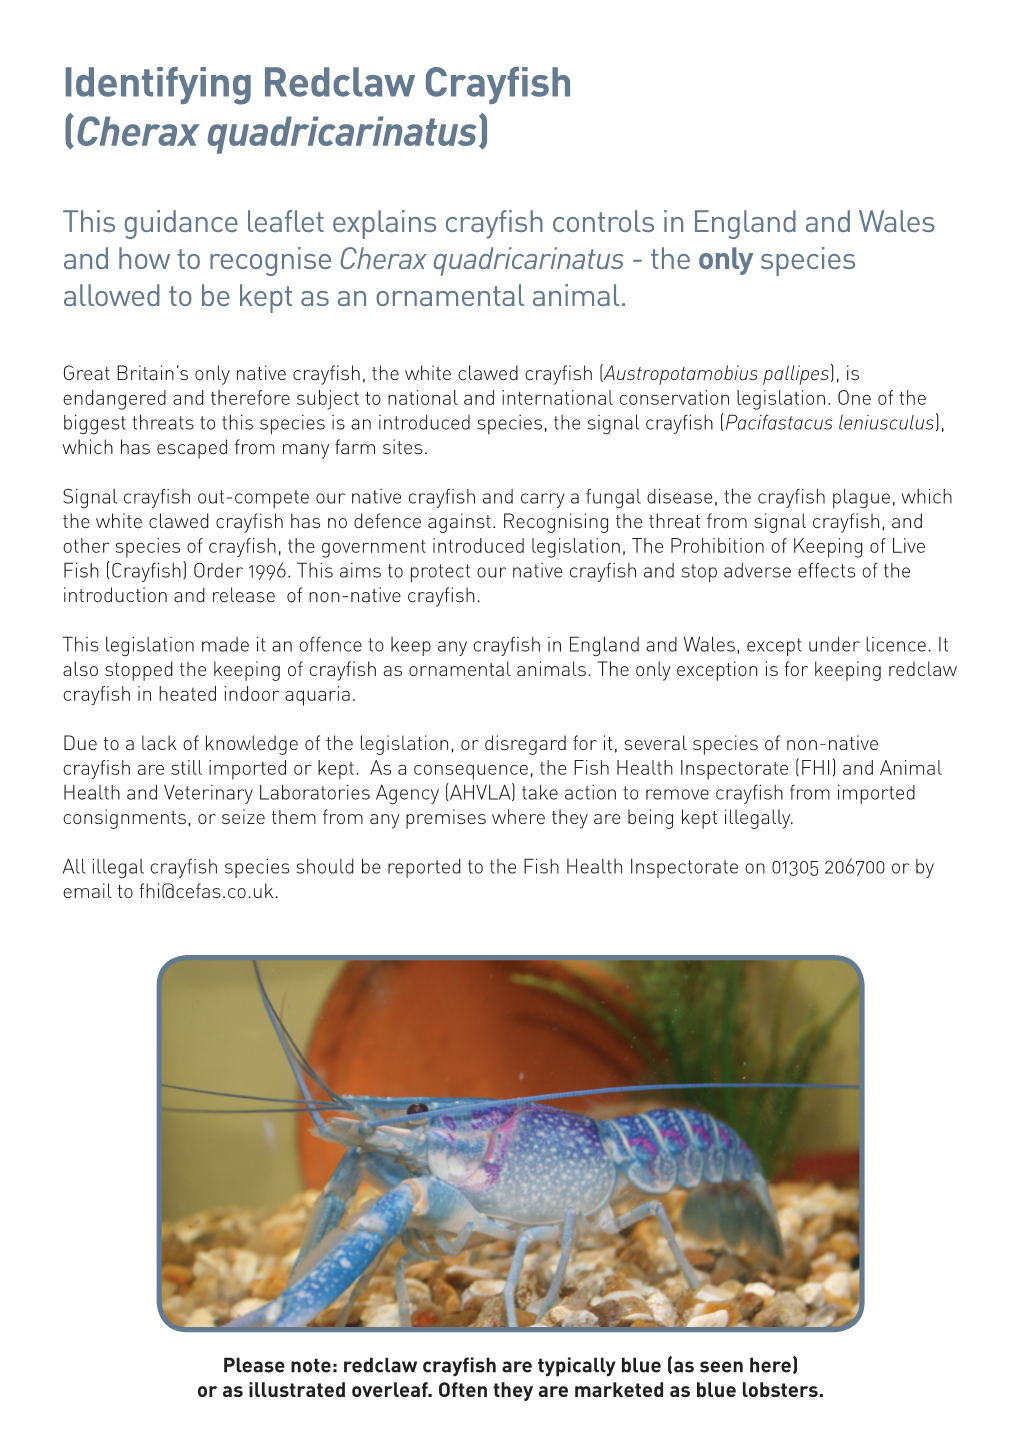 Identifying Redclaw Crayfish (Cherax Quadricarinatus)